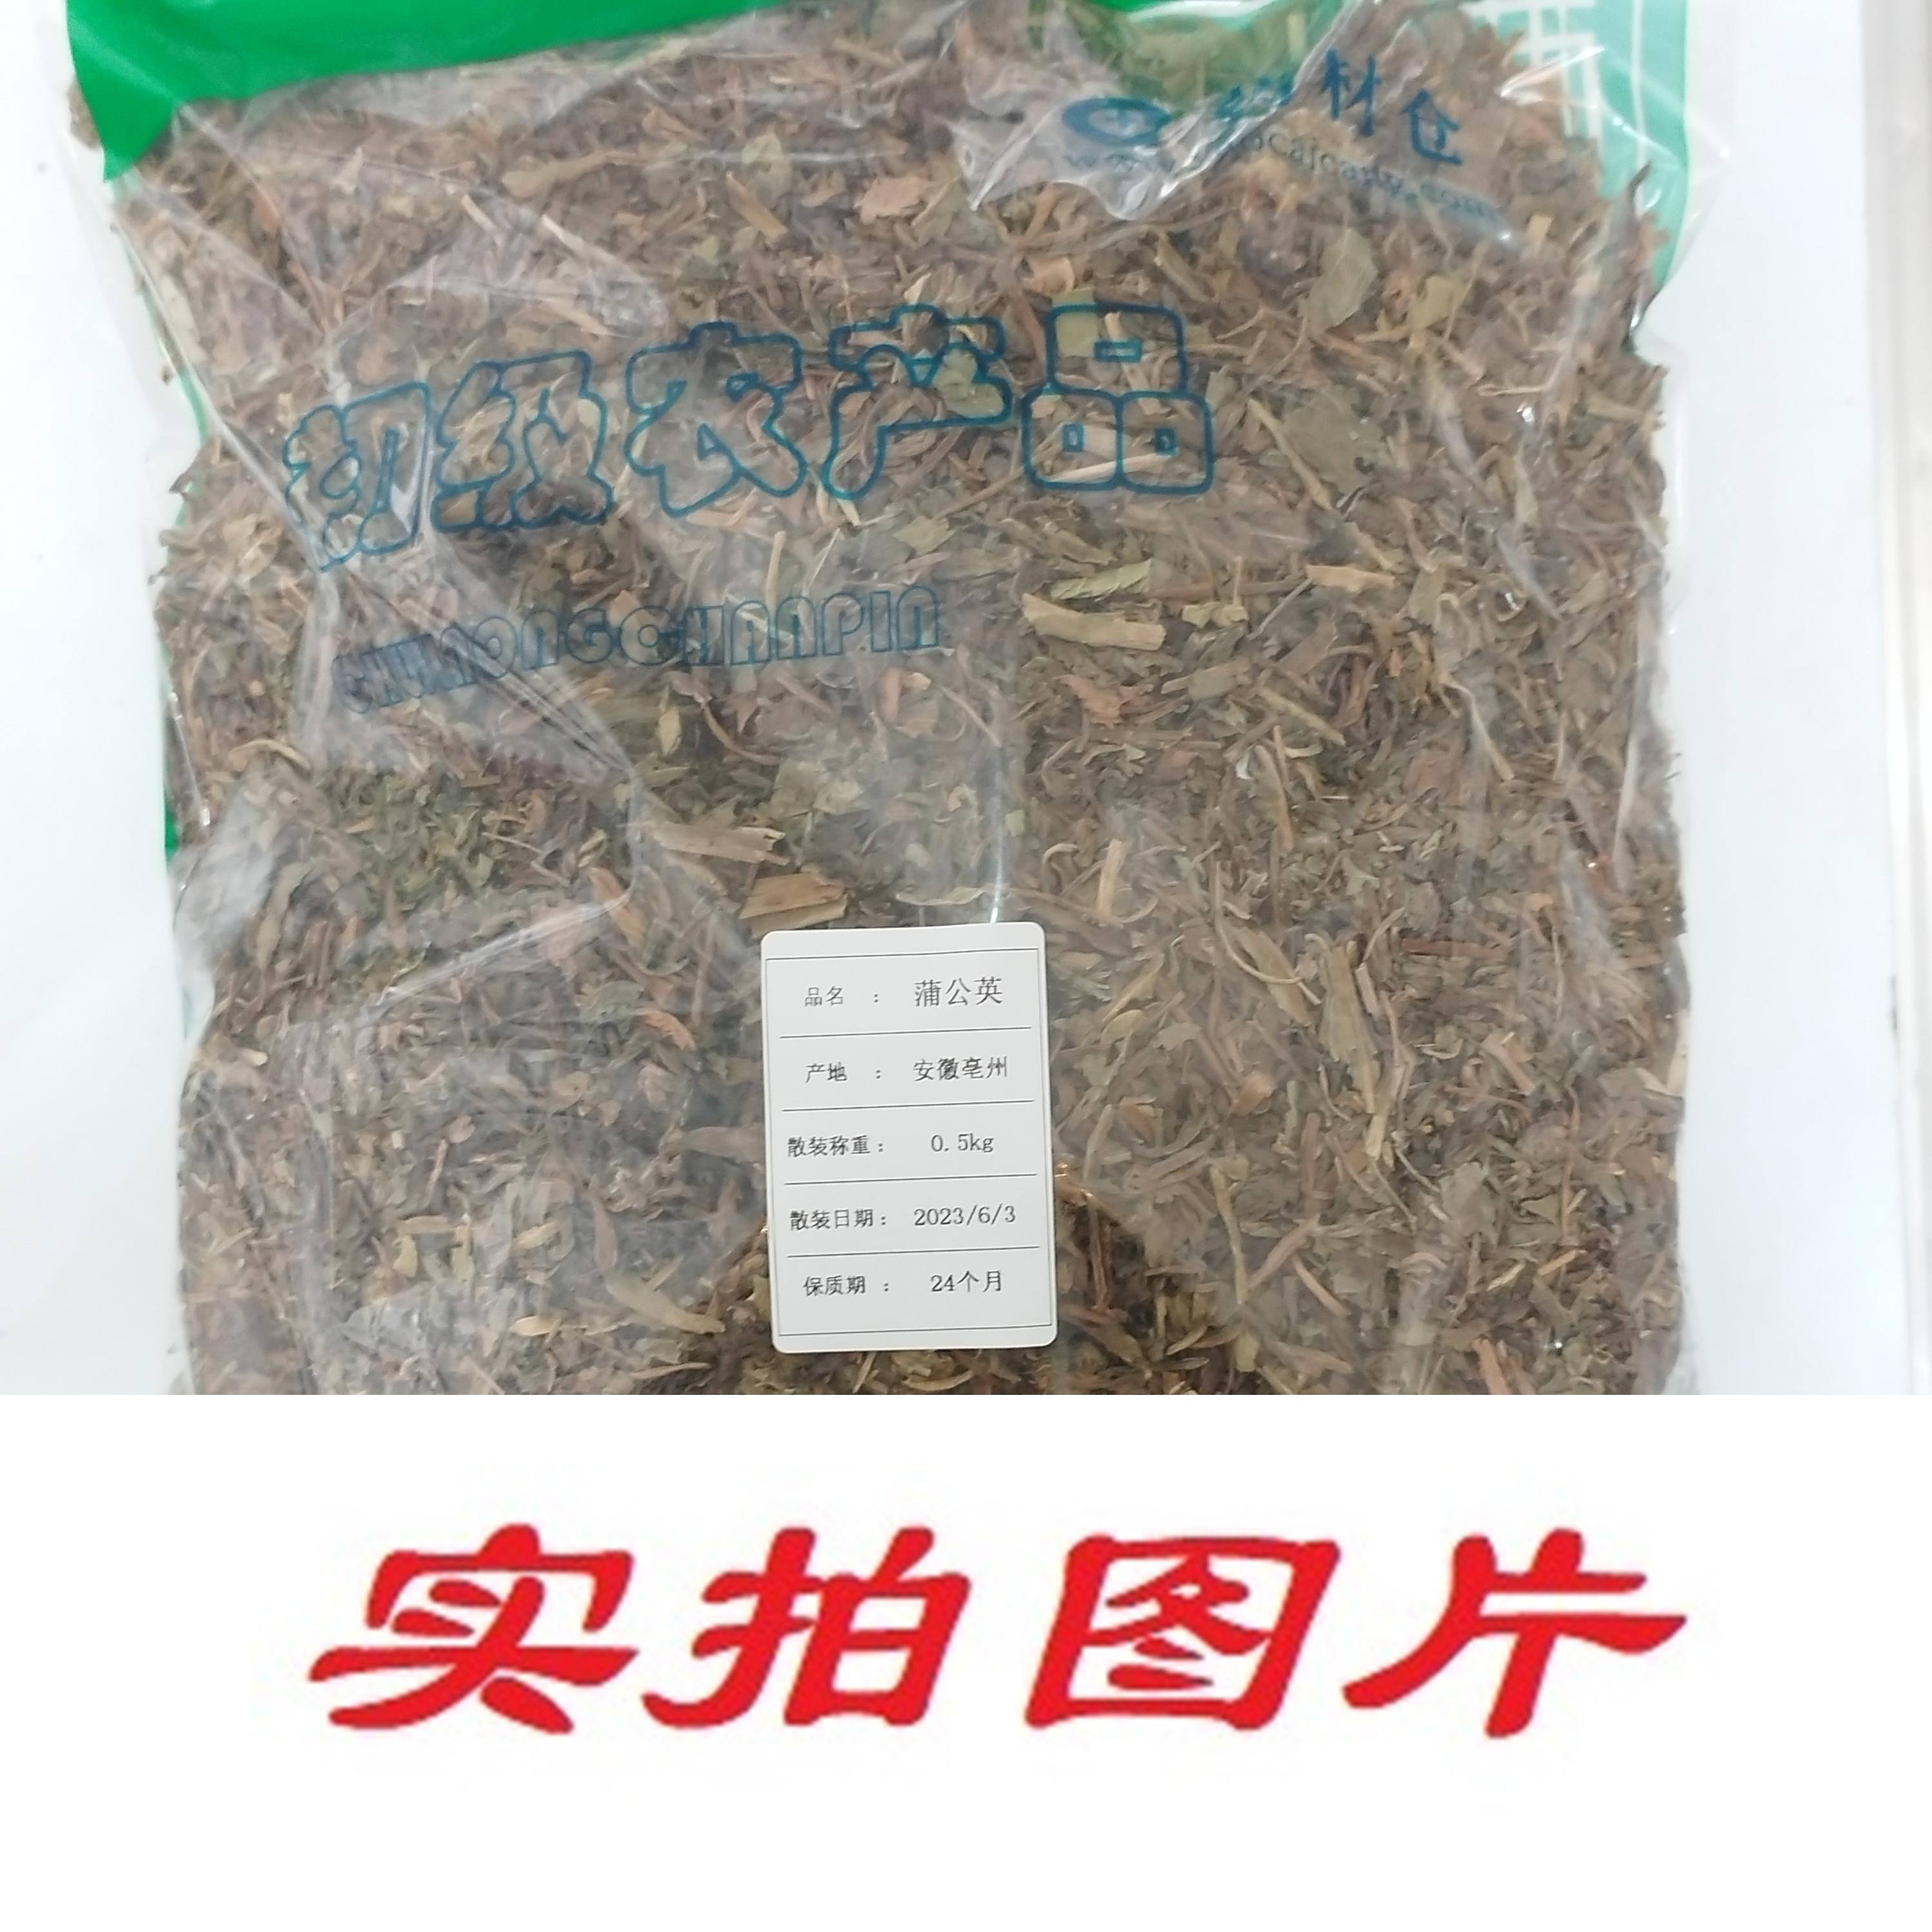 【】蒲公英0.5kg-农副产品